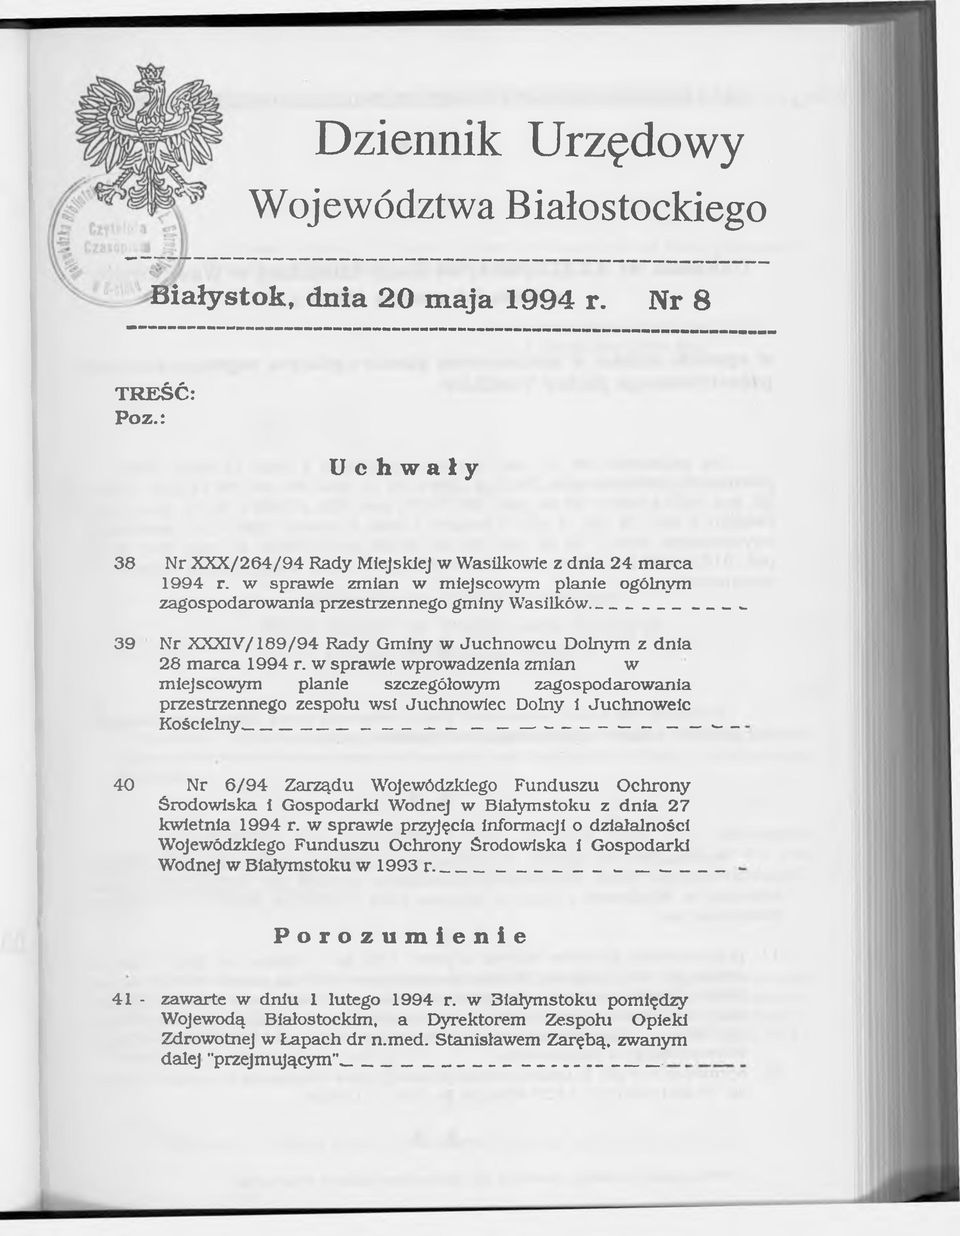 w sprawie wprowadzenia zmian w miejscowym planie szczegółowym zagospodarowania przestrzennego zespołu wsi Juchnowiec Dolny i Juchnoweic Kościelny - ------------------- - 40 Nr 6/94 Zarządu